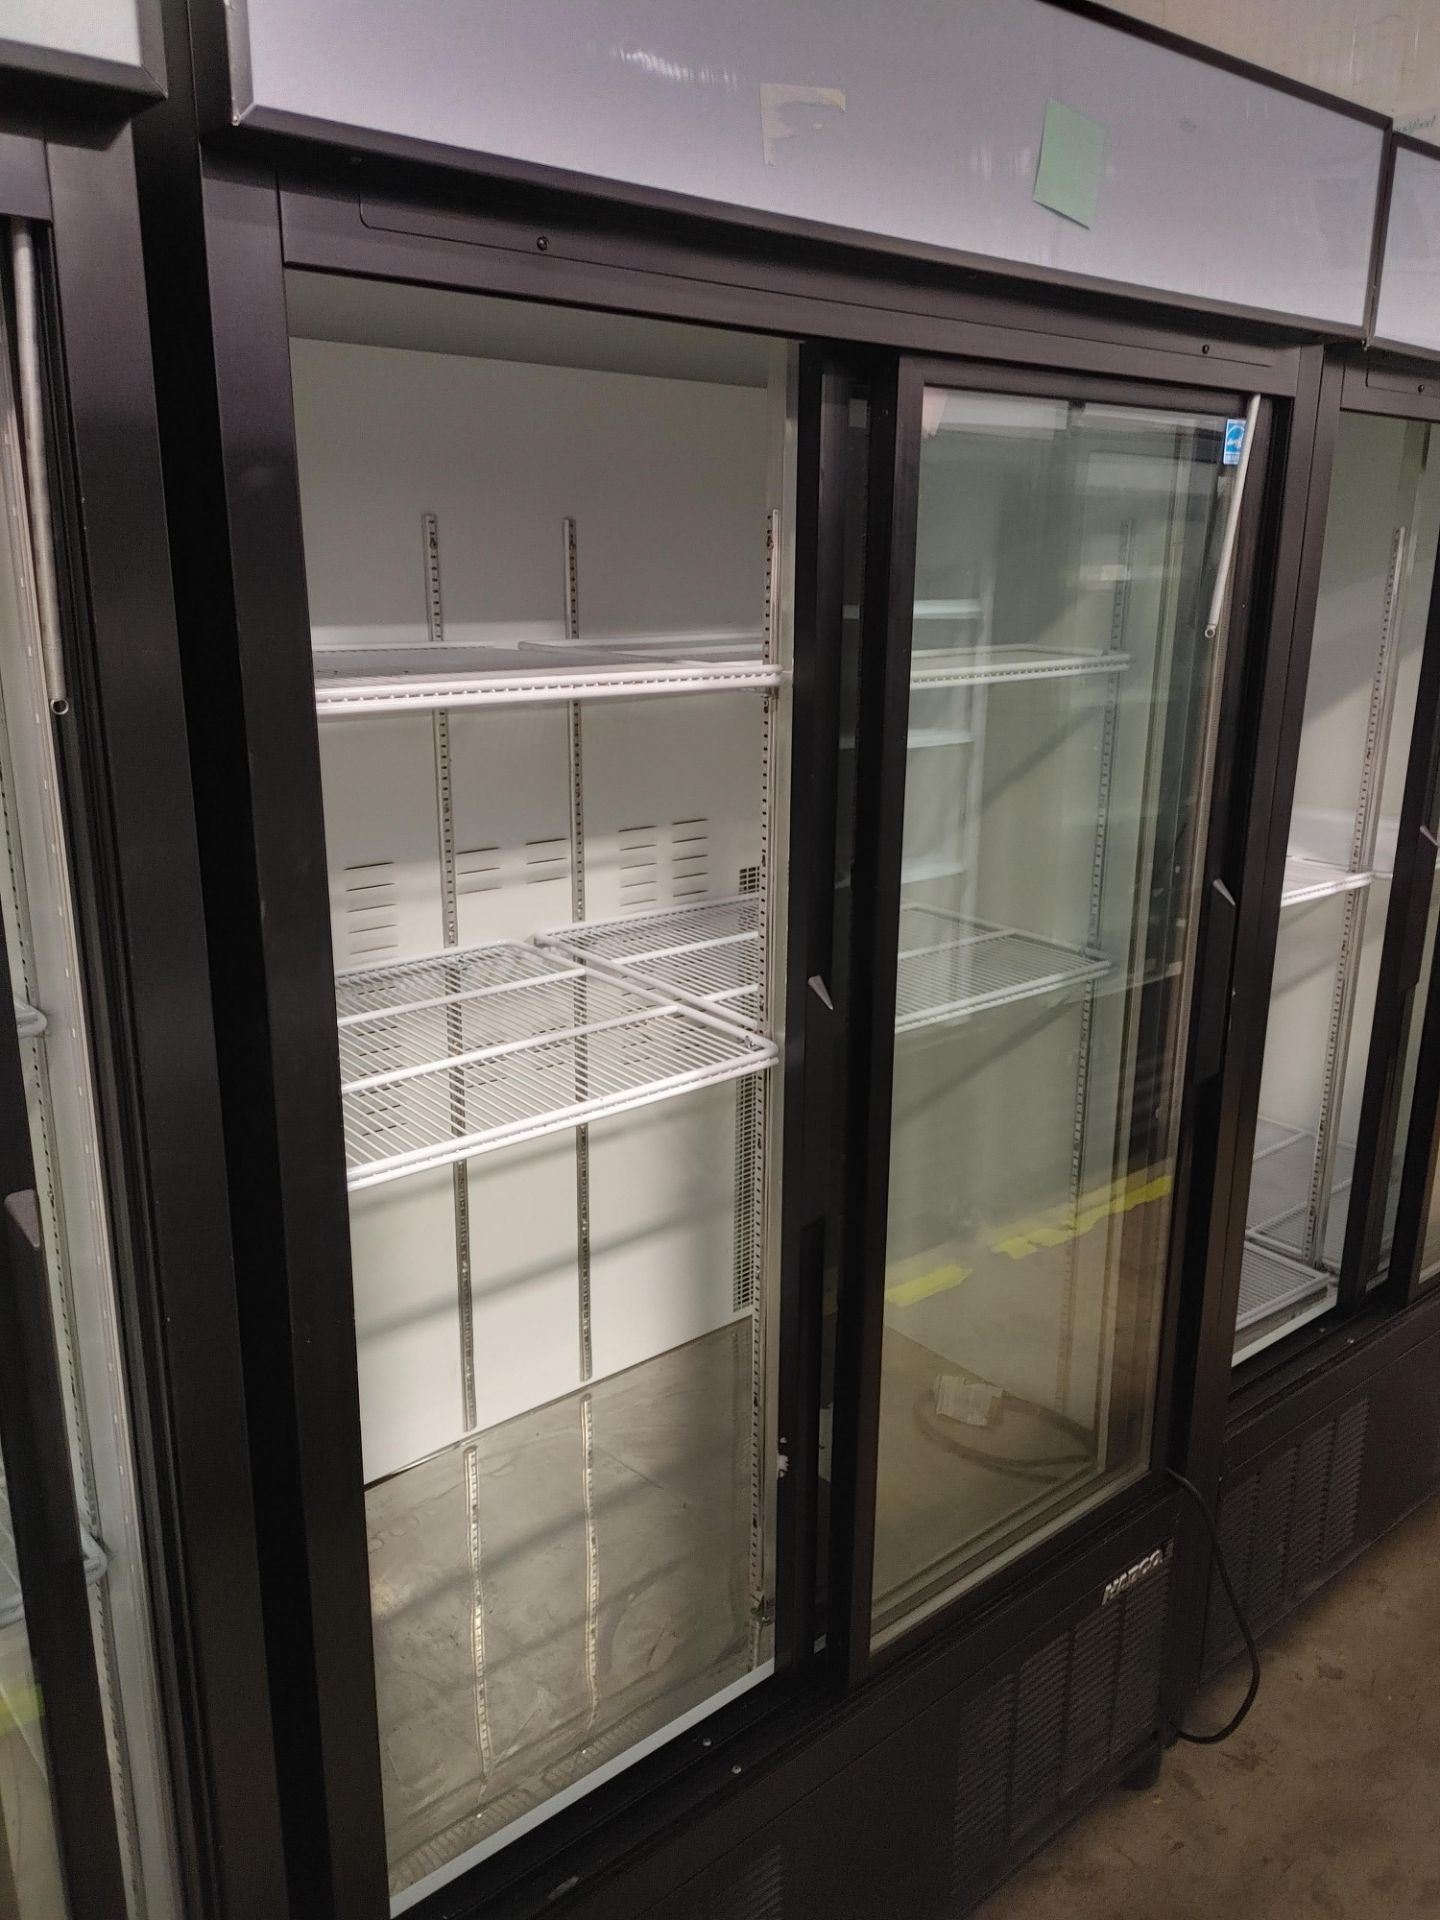 Habco "ESM42HC" 2 Door Glass Front Refrigerator S/N 420662194